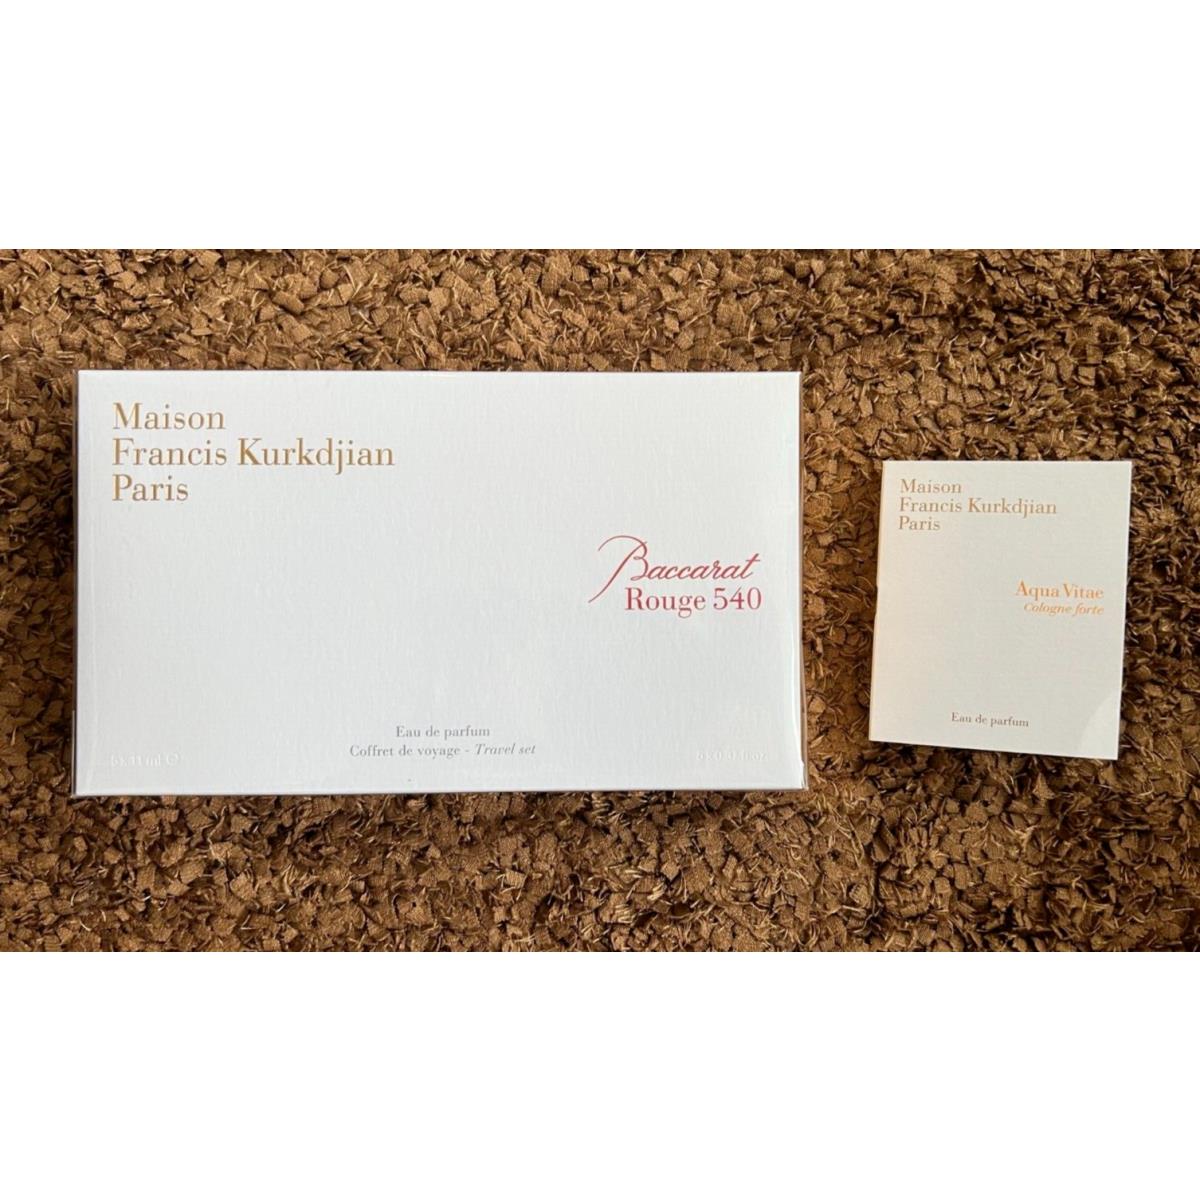 Maison Francis Kurkdjian Baccarat Rouge 540 Eau de Parfum Coffret Travel Gift Set 5 x 0.37 oz